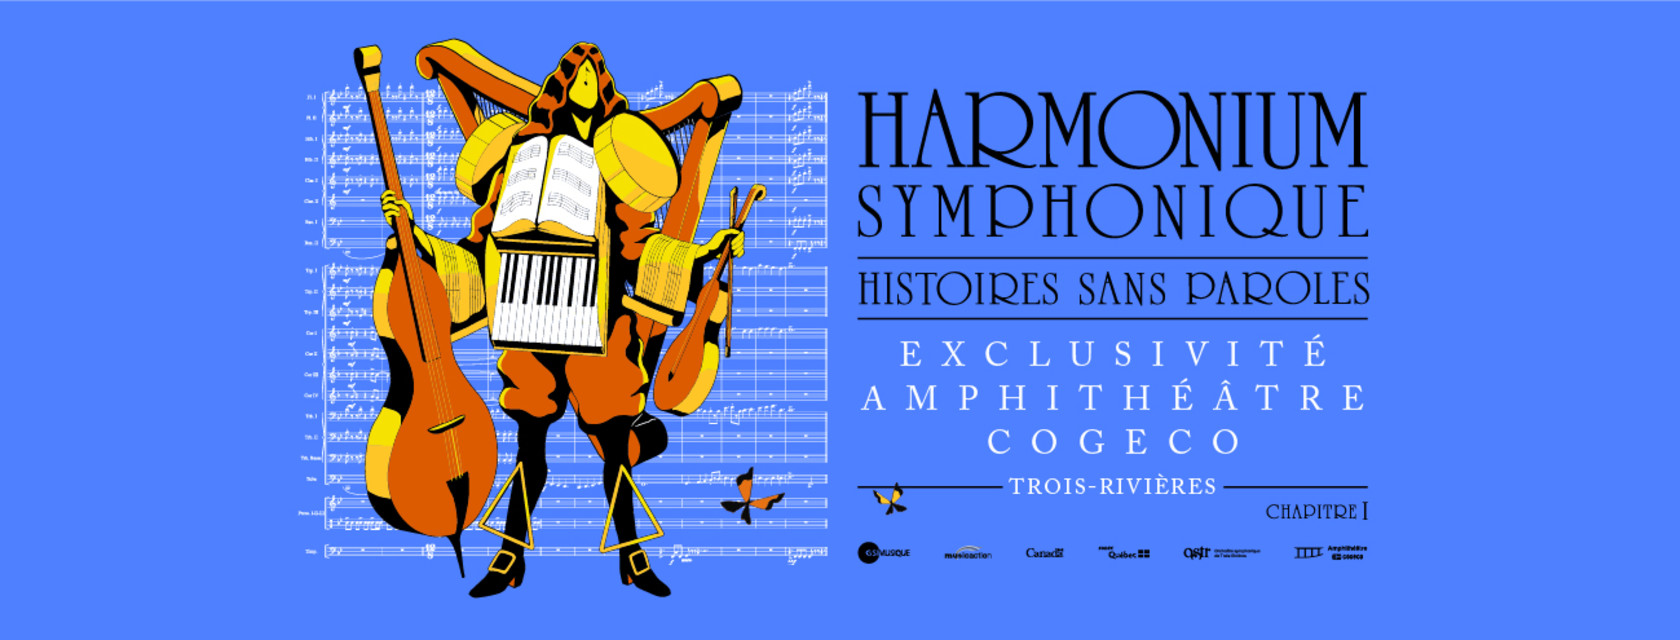 Harmonium symphonique - Histoires sans paroles: ouverture de l’espace gazonné pour la représentation du 4 juin 2022!